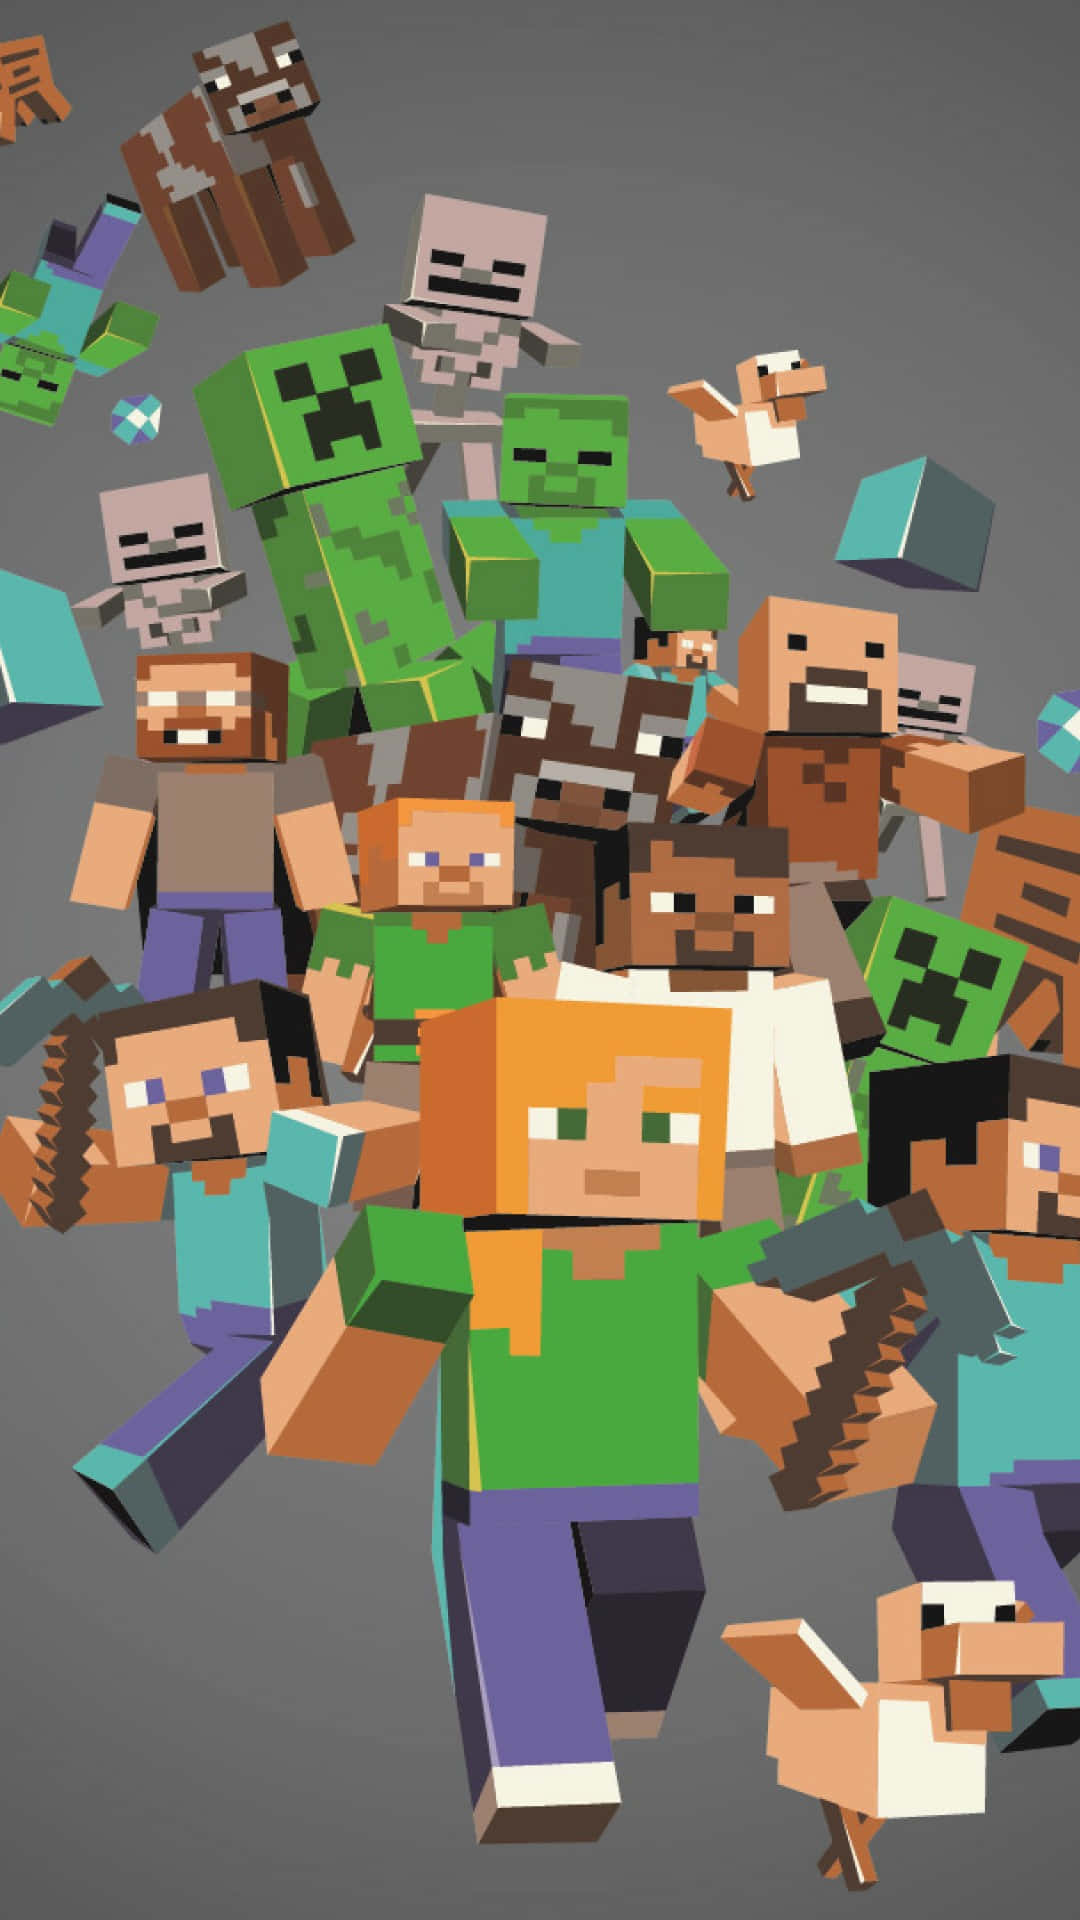 Fondode Pantalla De Minecraft Con Personajes Y Animales Para El Pixel 3xl.